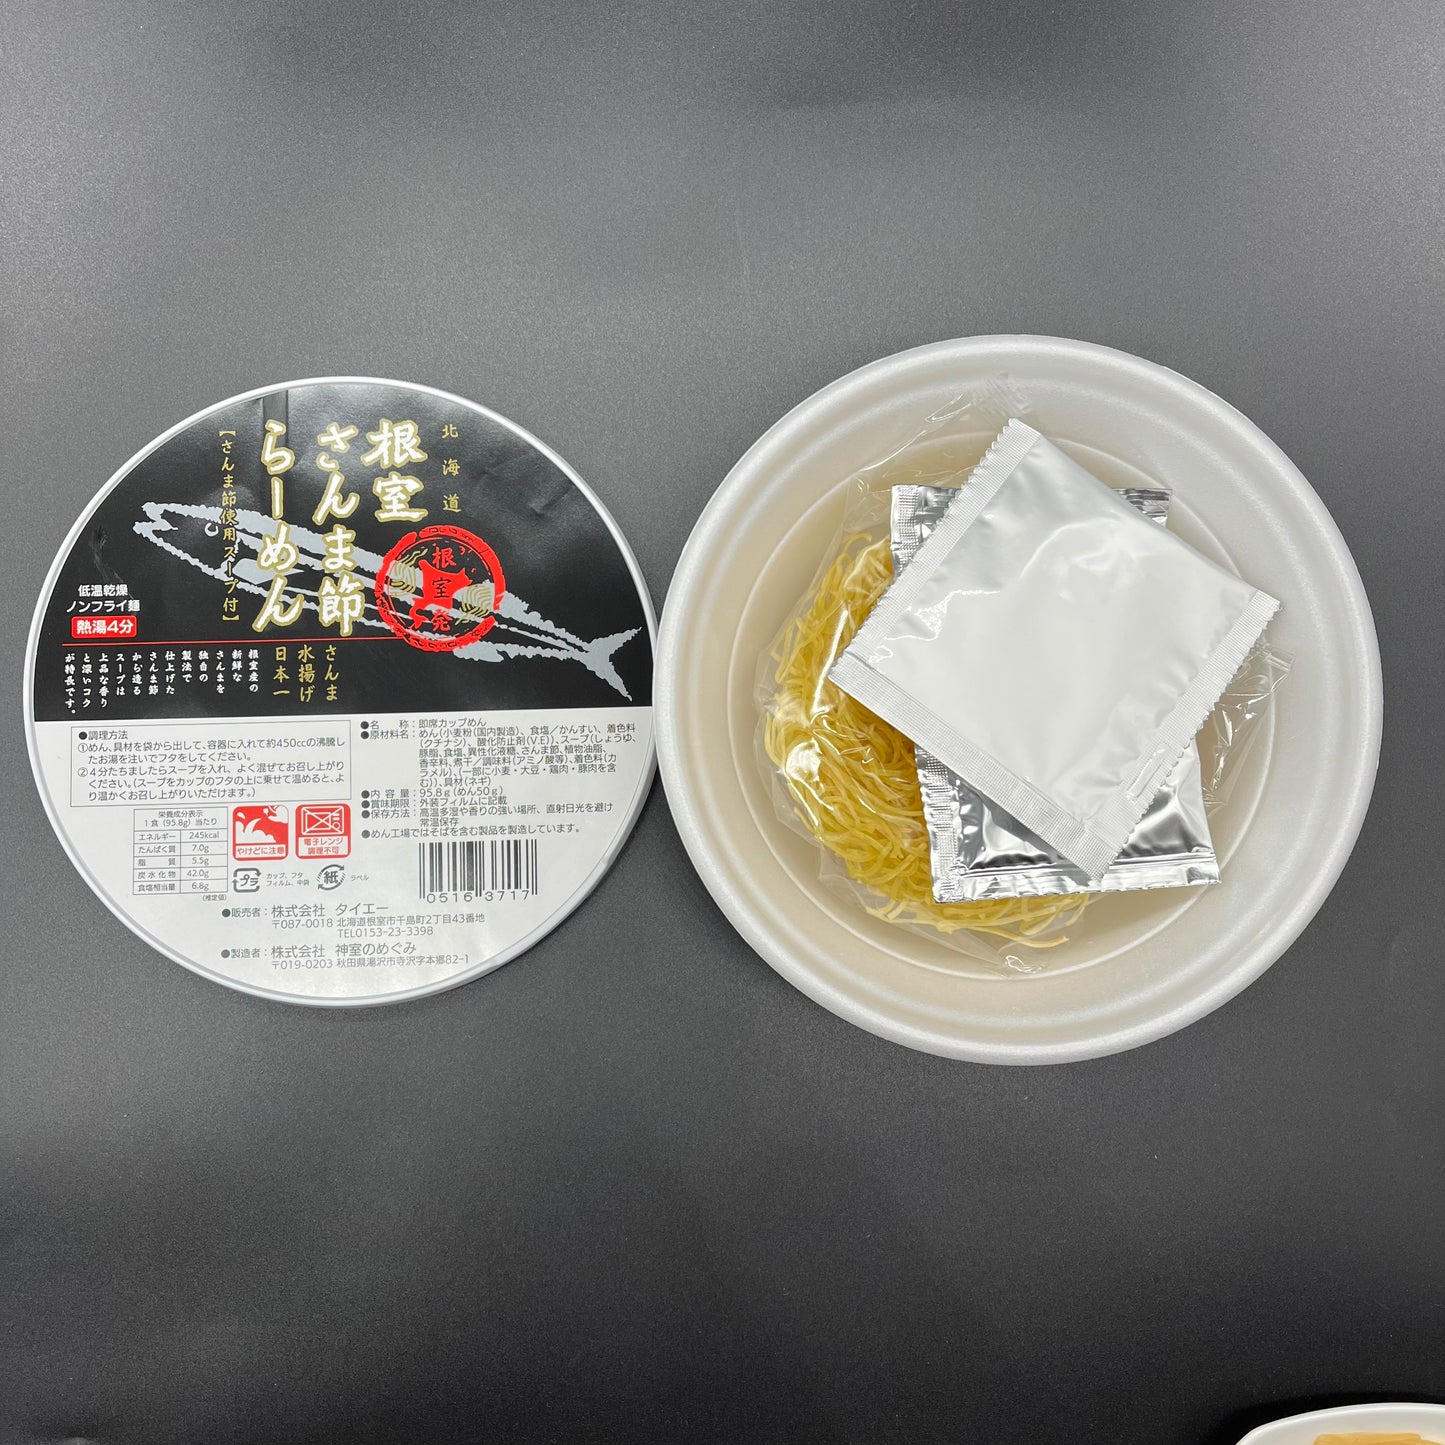 さんま節ラーメンカップ麺単品